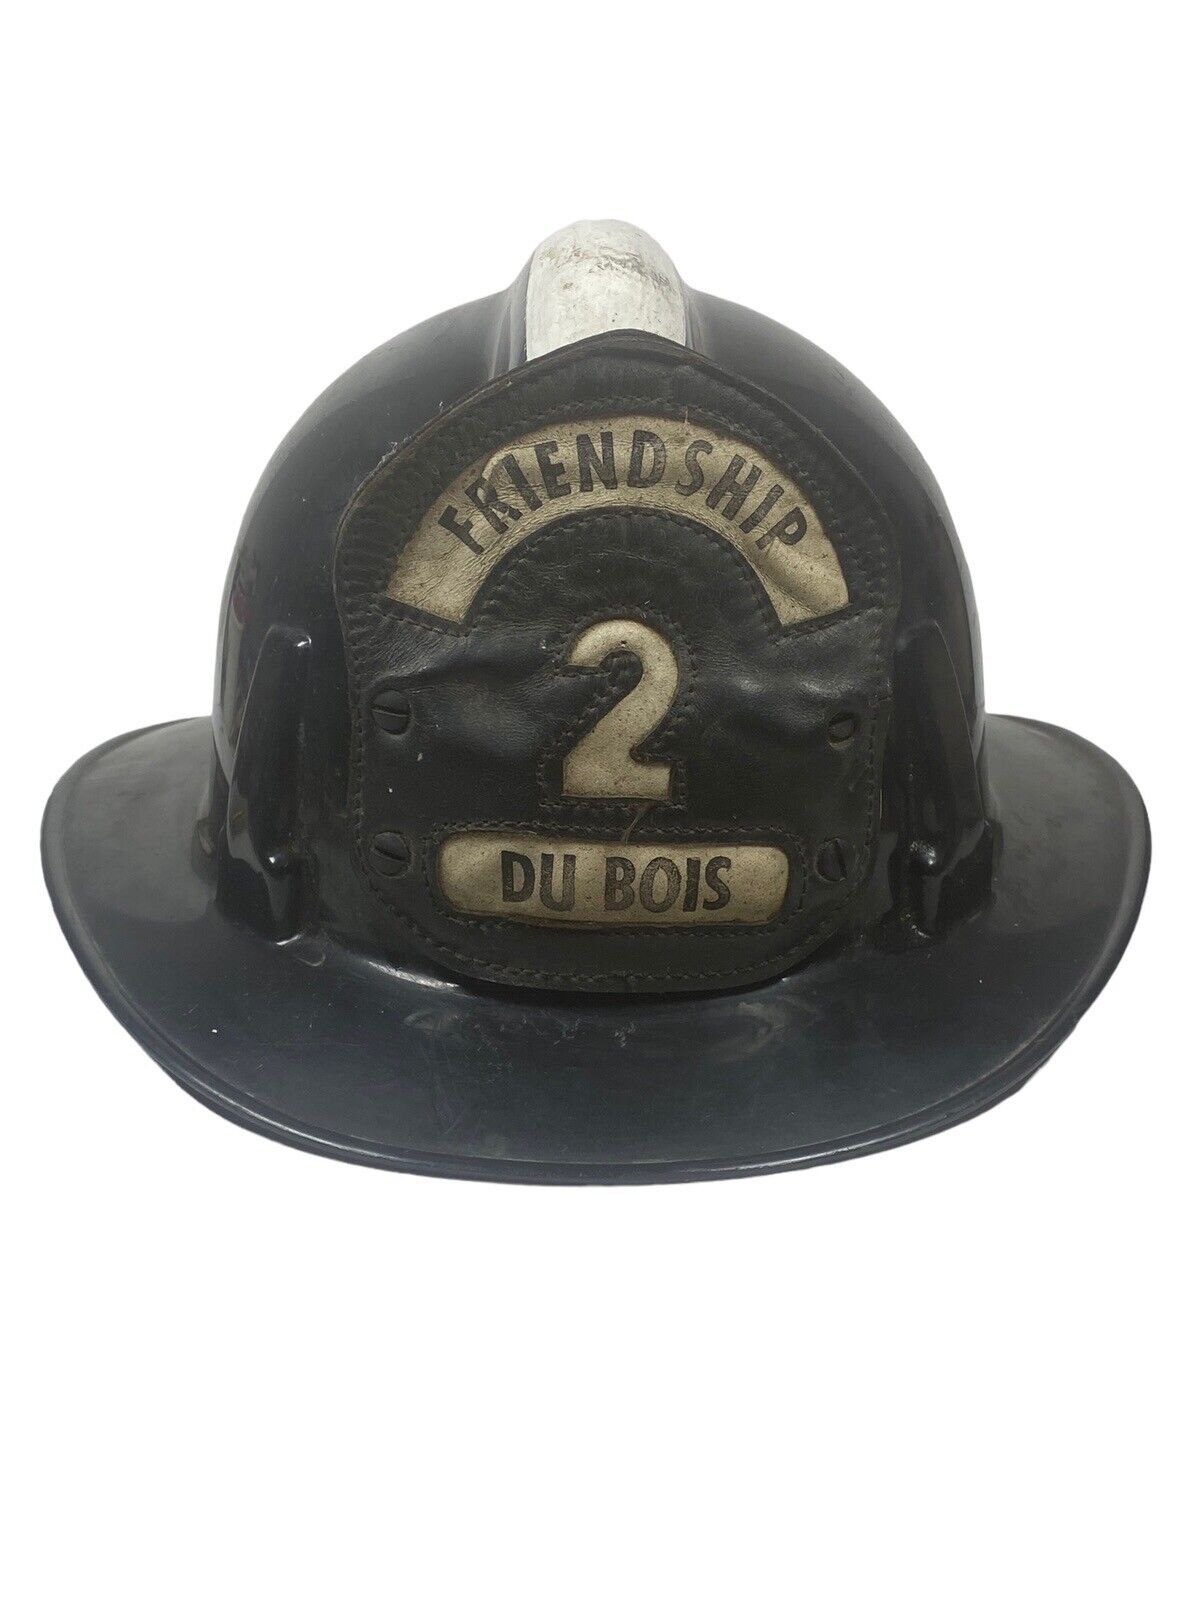 Topgard MSA Firemens Helmet Leather Badge #2 FRIENDSHIP Du Bois Chin Strap Vtg